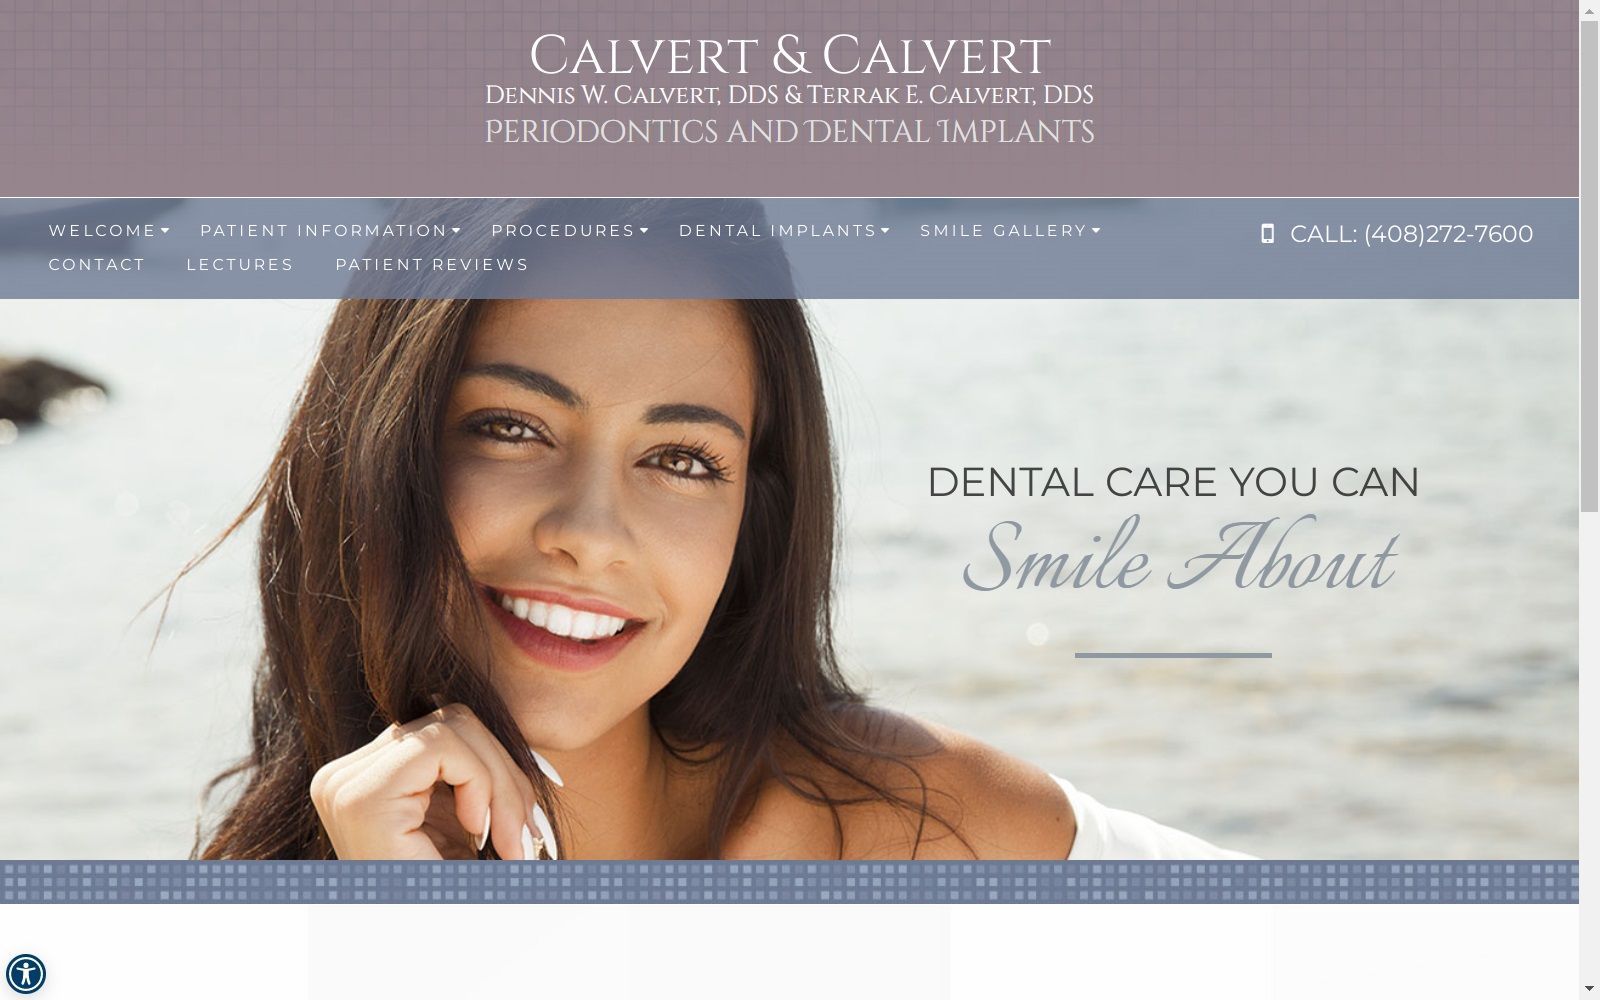 periodontalhealthcare.com screenshot